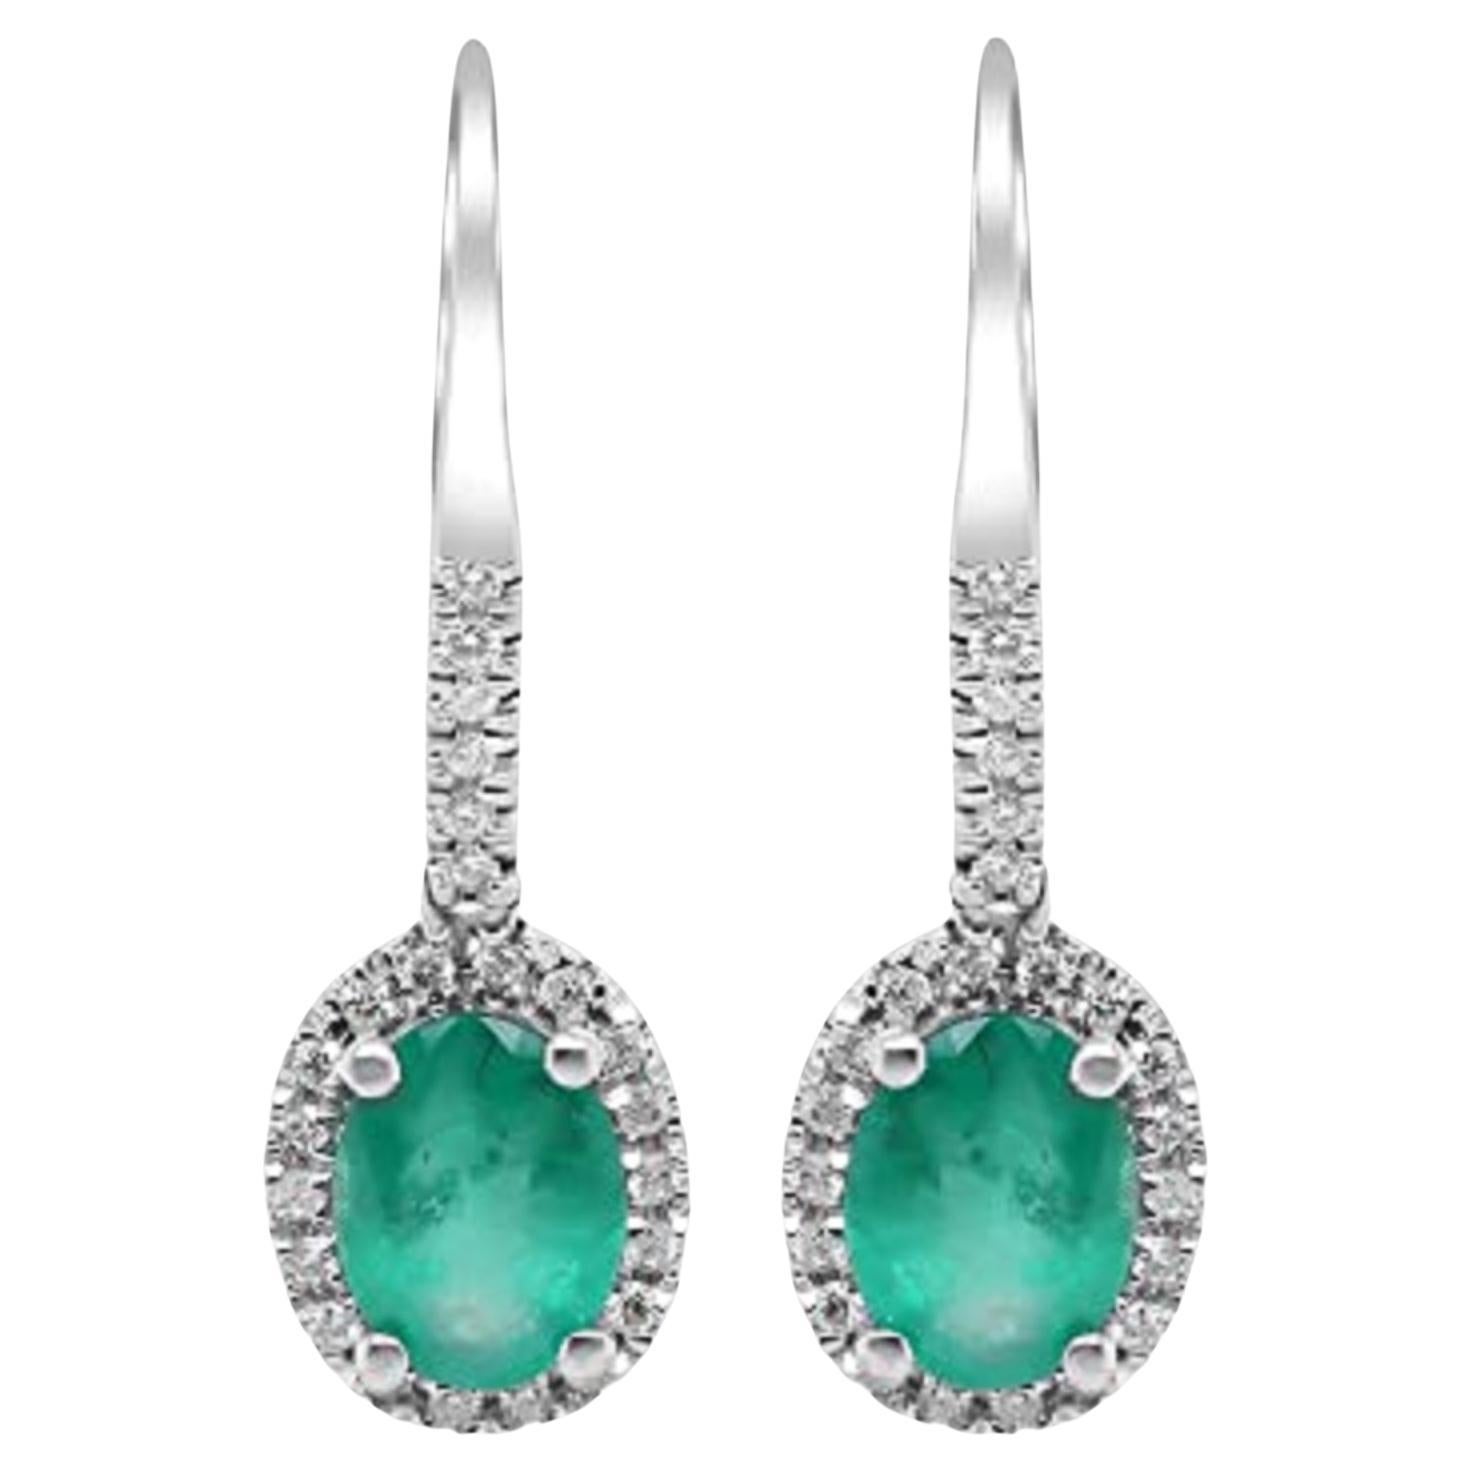 Gin & Grace14K White Gold Zambian Emerald Earrings with Diamonds For Women